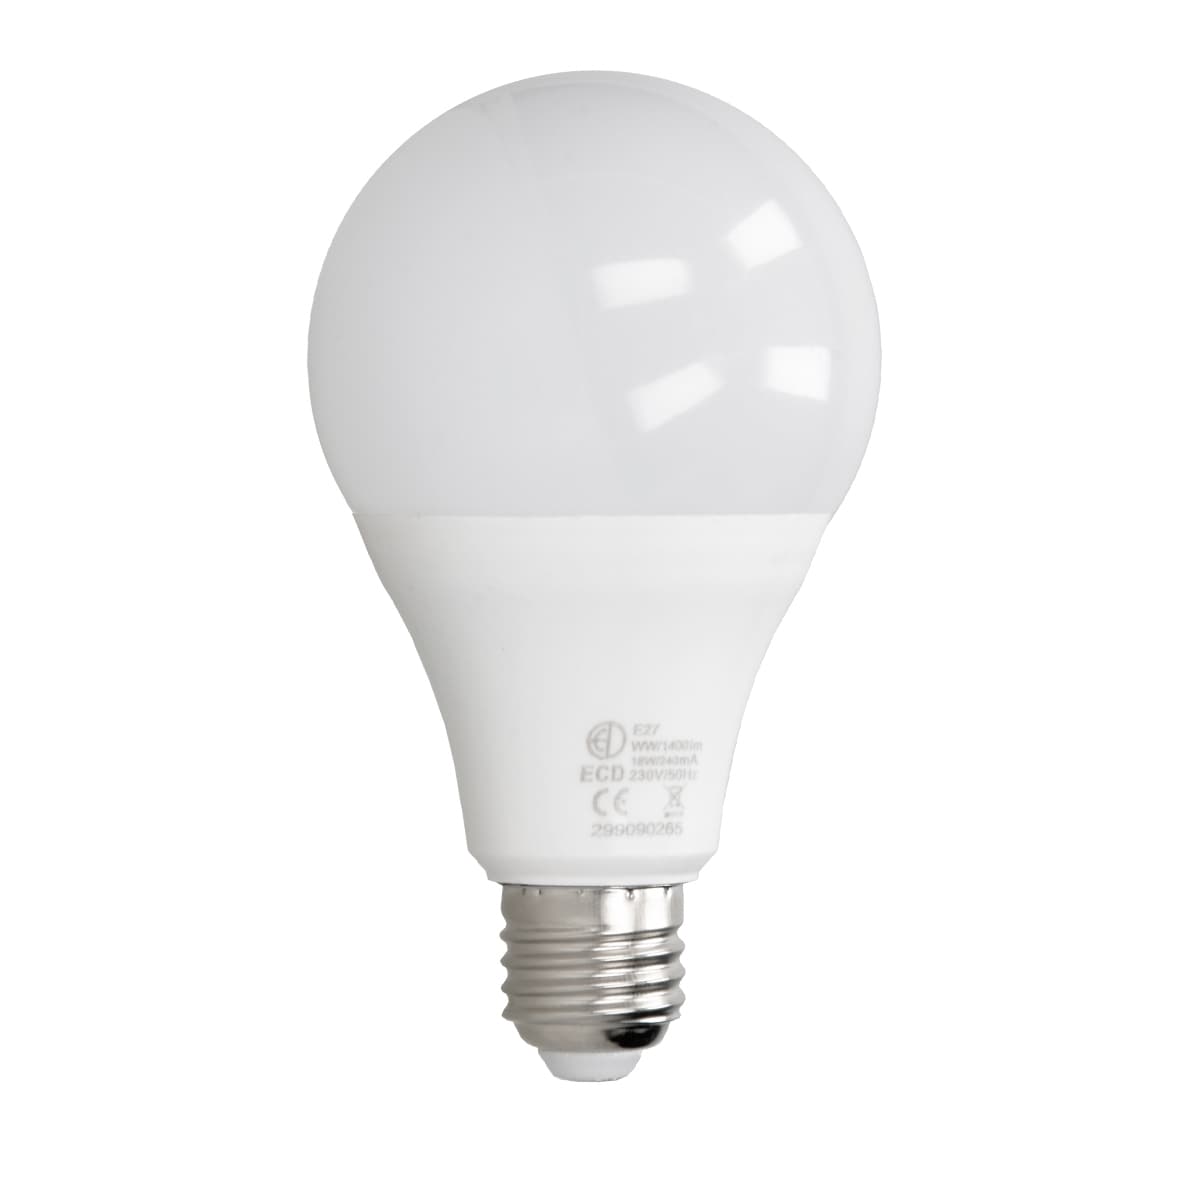 E27 LED-lampa lampa glödlampor belysning sparlampa 18W kyla vit - Elgiganten